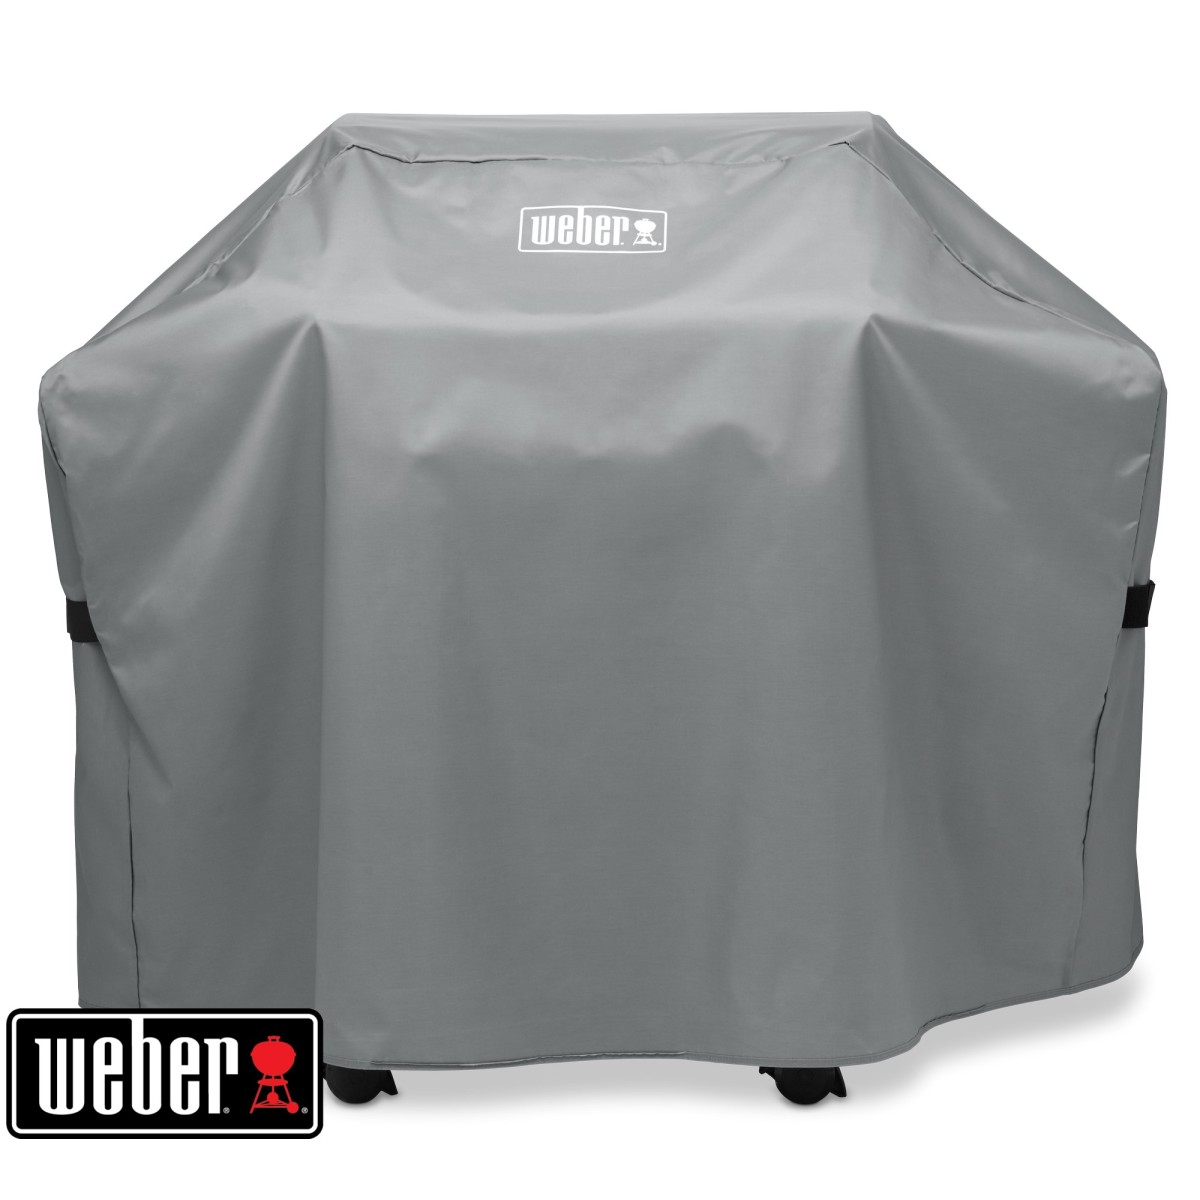 WEBER Barbecue Cover - Fits Genesis® II - 300 Series, Genesis® 300 series, 7179